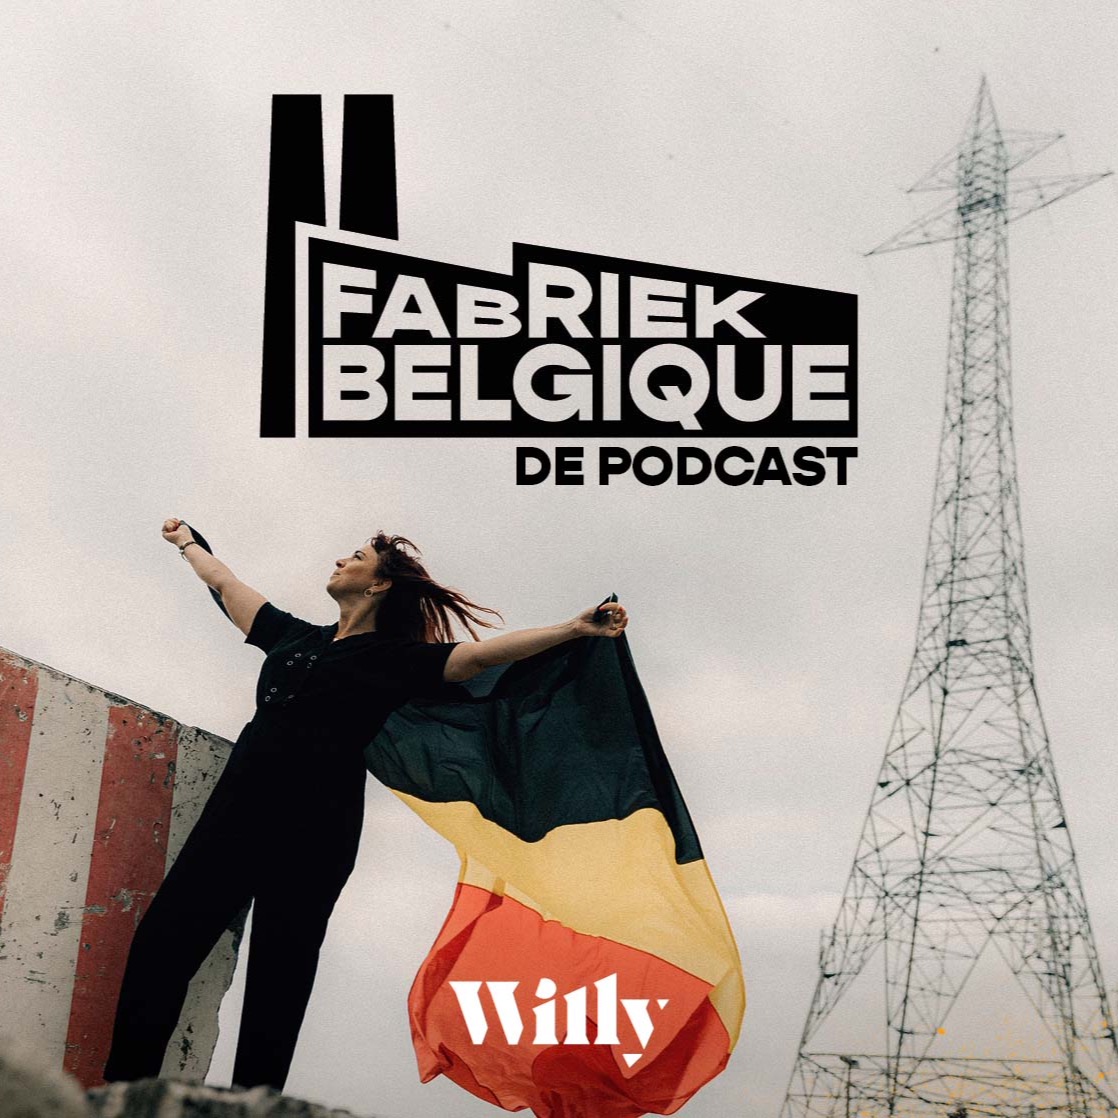 Fabriek belgique podcast